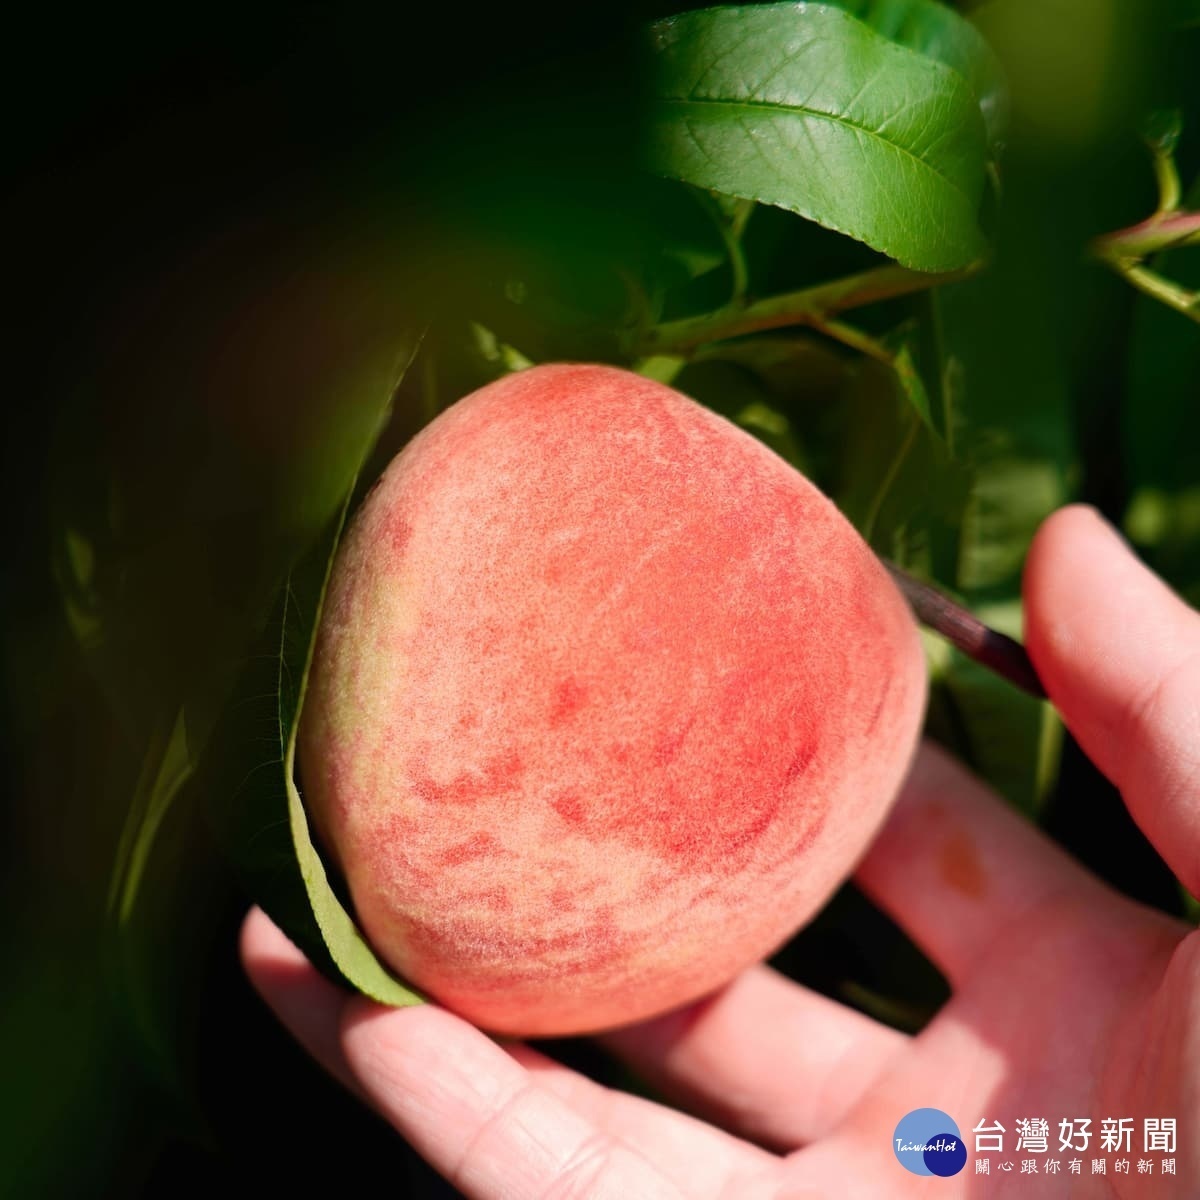 一顆顆水嫩多汁的水蜜桃是許多人夏日引頸期盼的美味。